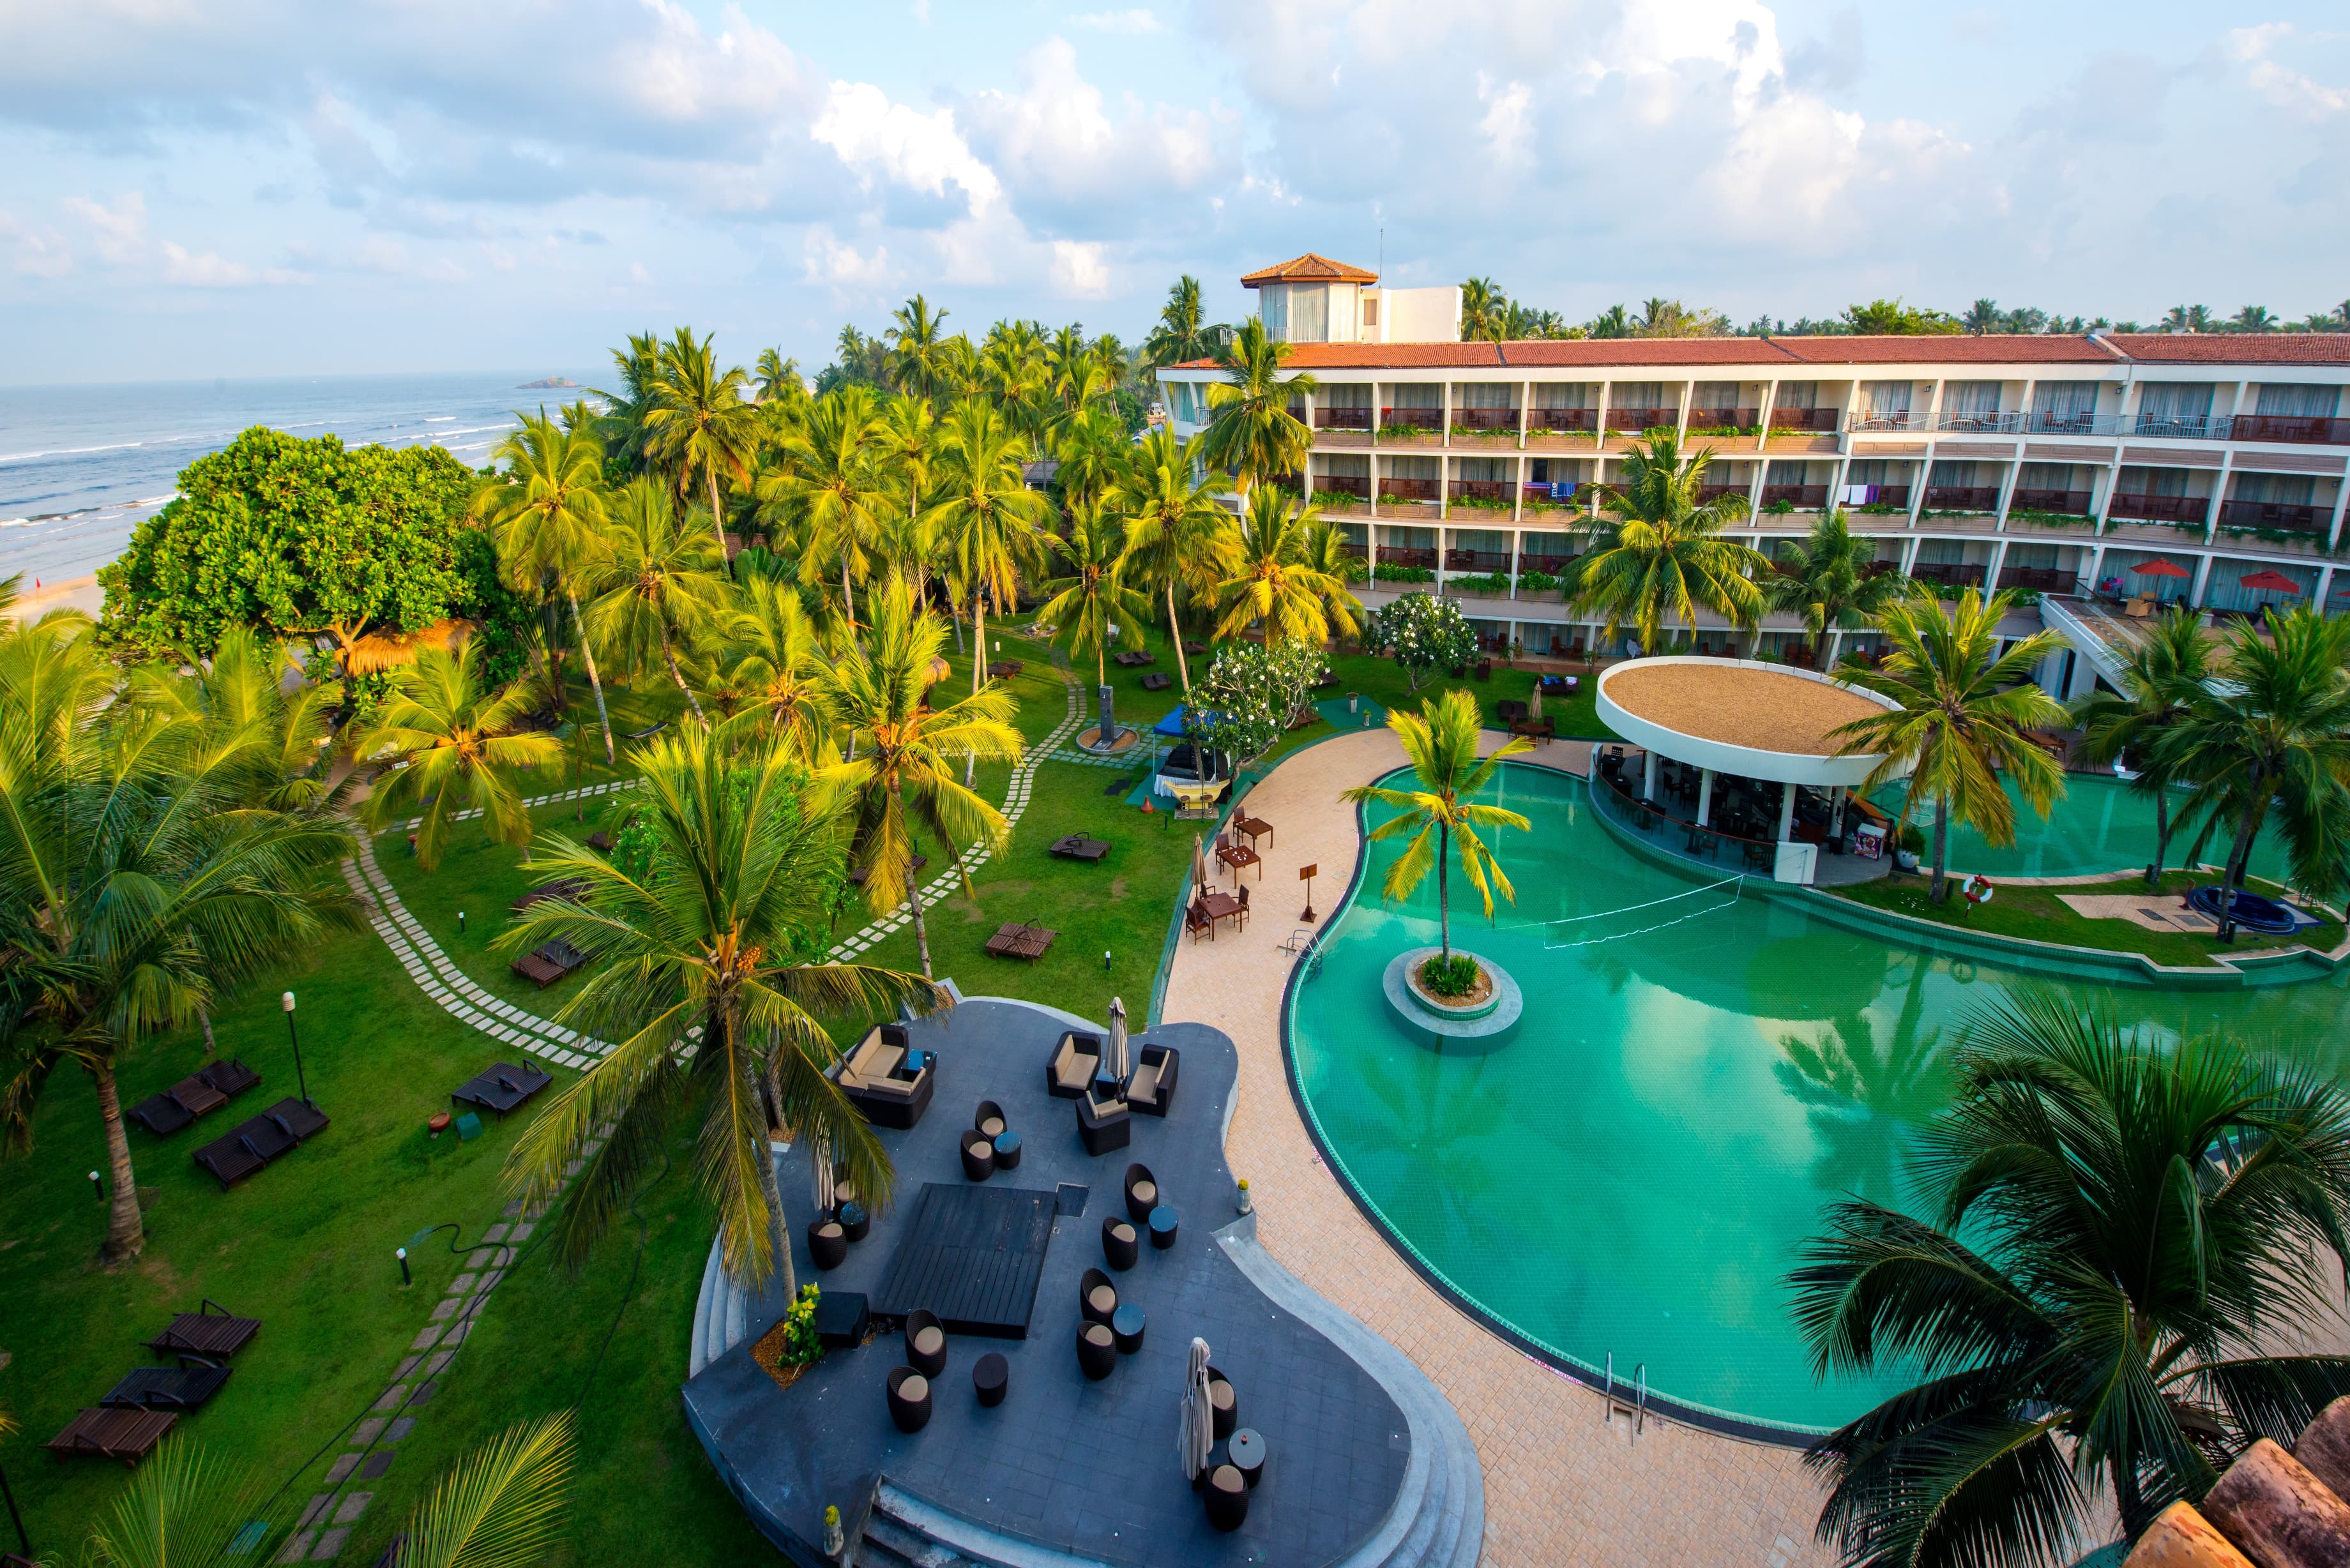 مجموعة فنادق بارسيلو تفتتح فندقها المجدد في سريلانكا